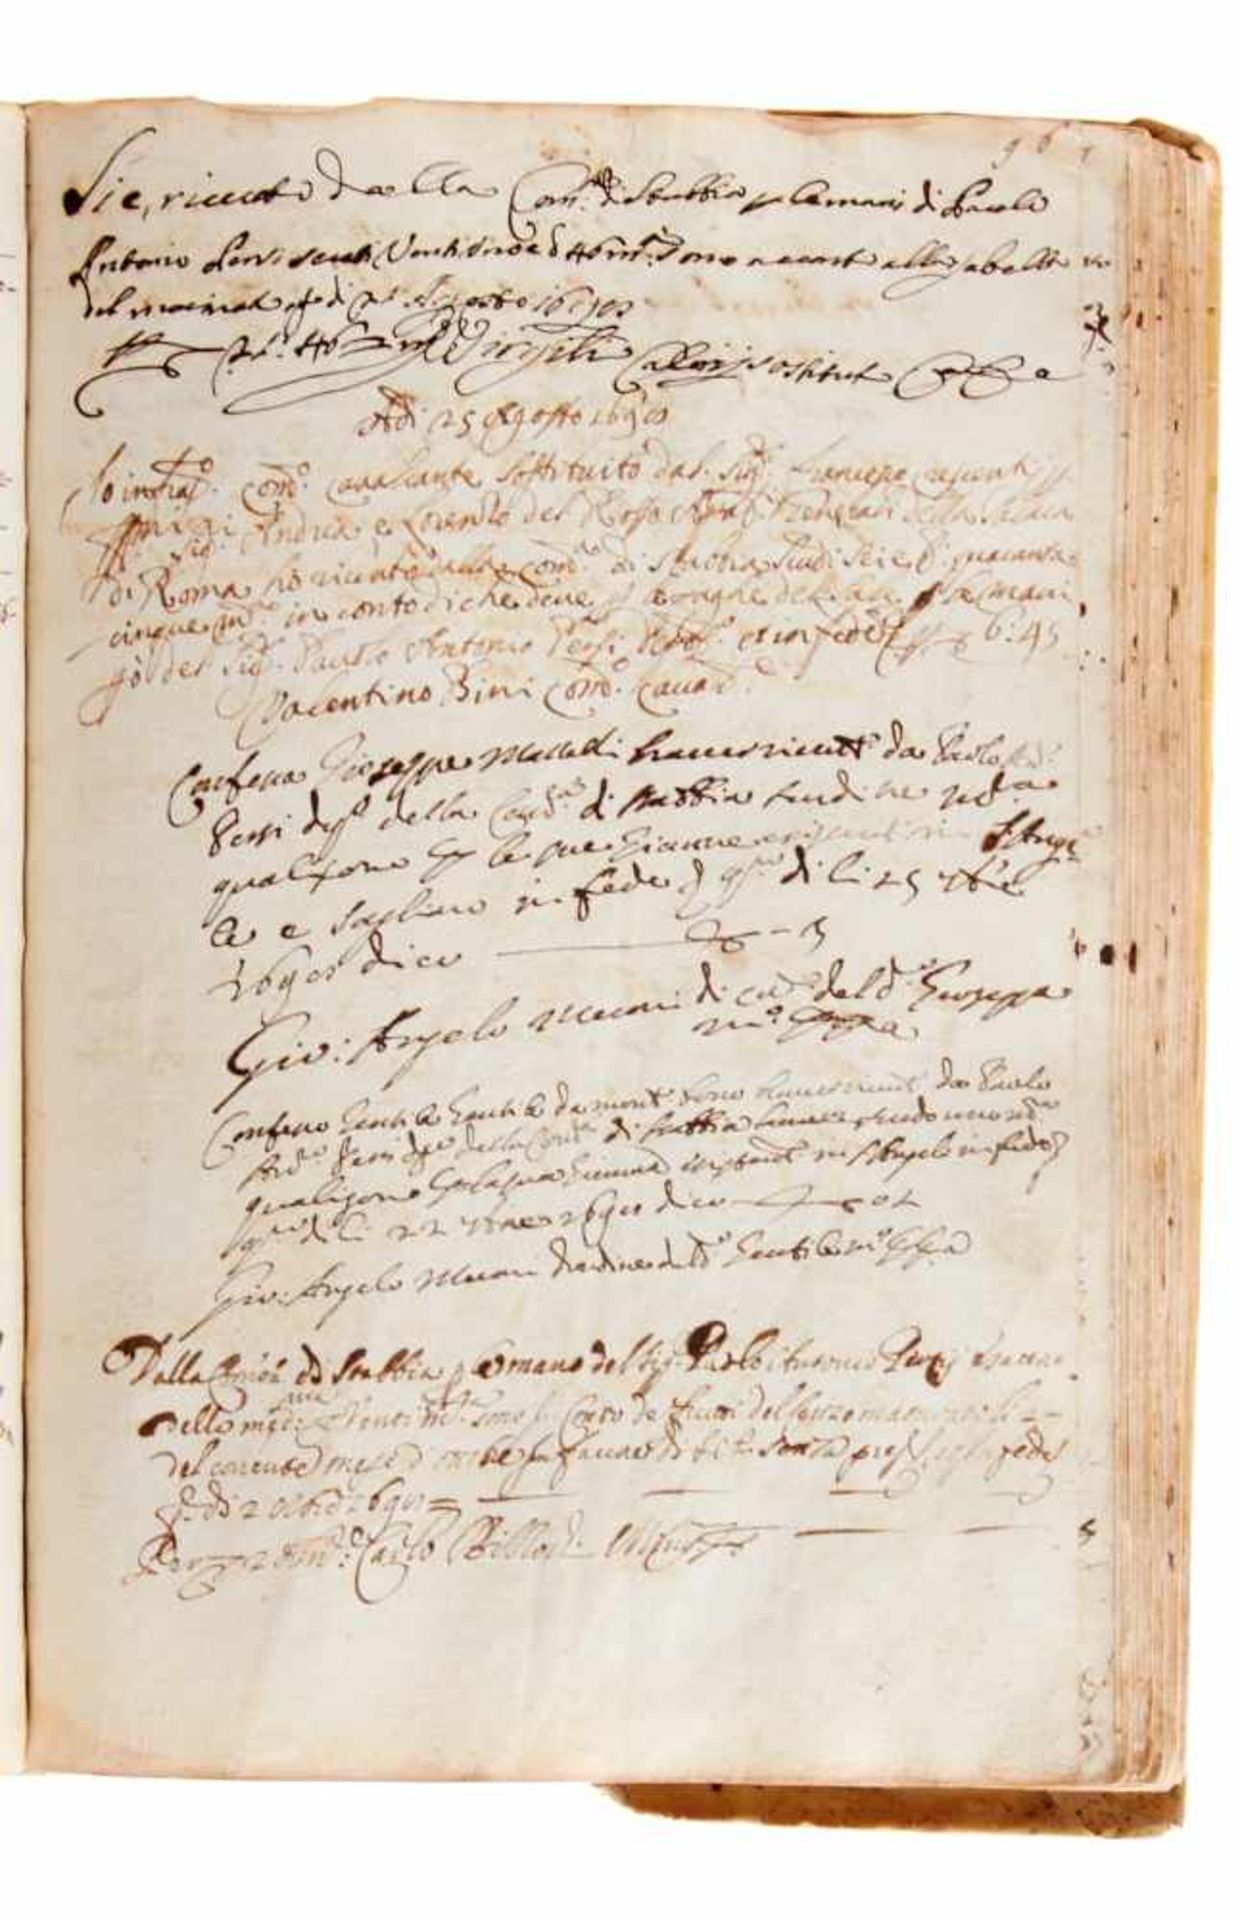 Stabia - Geschäftsbuch -Italienische Handschrift auf Papier. Wohl Castellamare di Stabia, dat. - Bild 4 aus 4